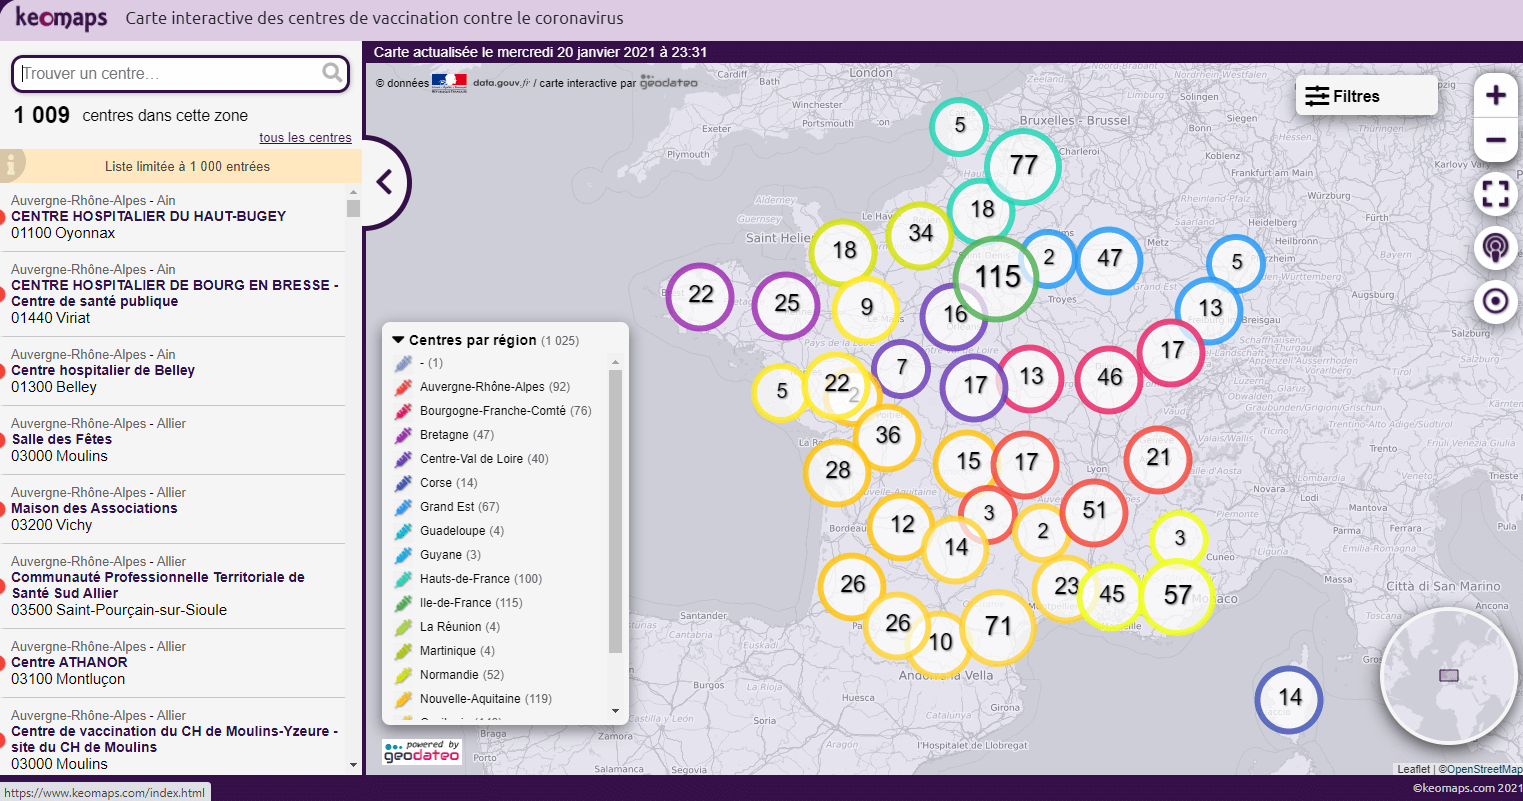 carte des lieux de vaccination contre le covid19 France